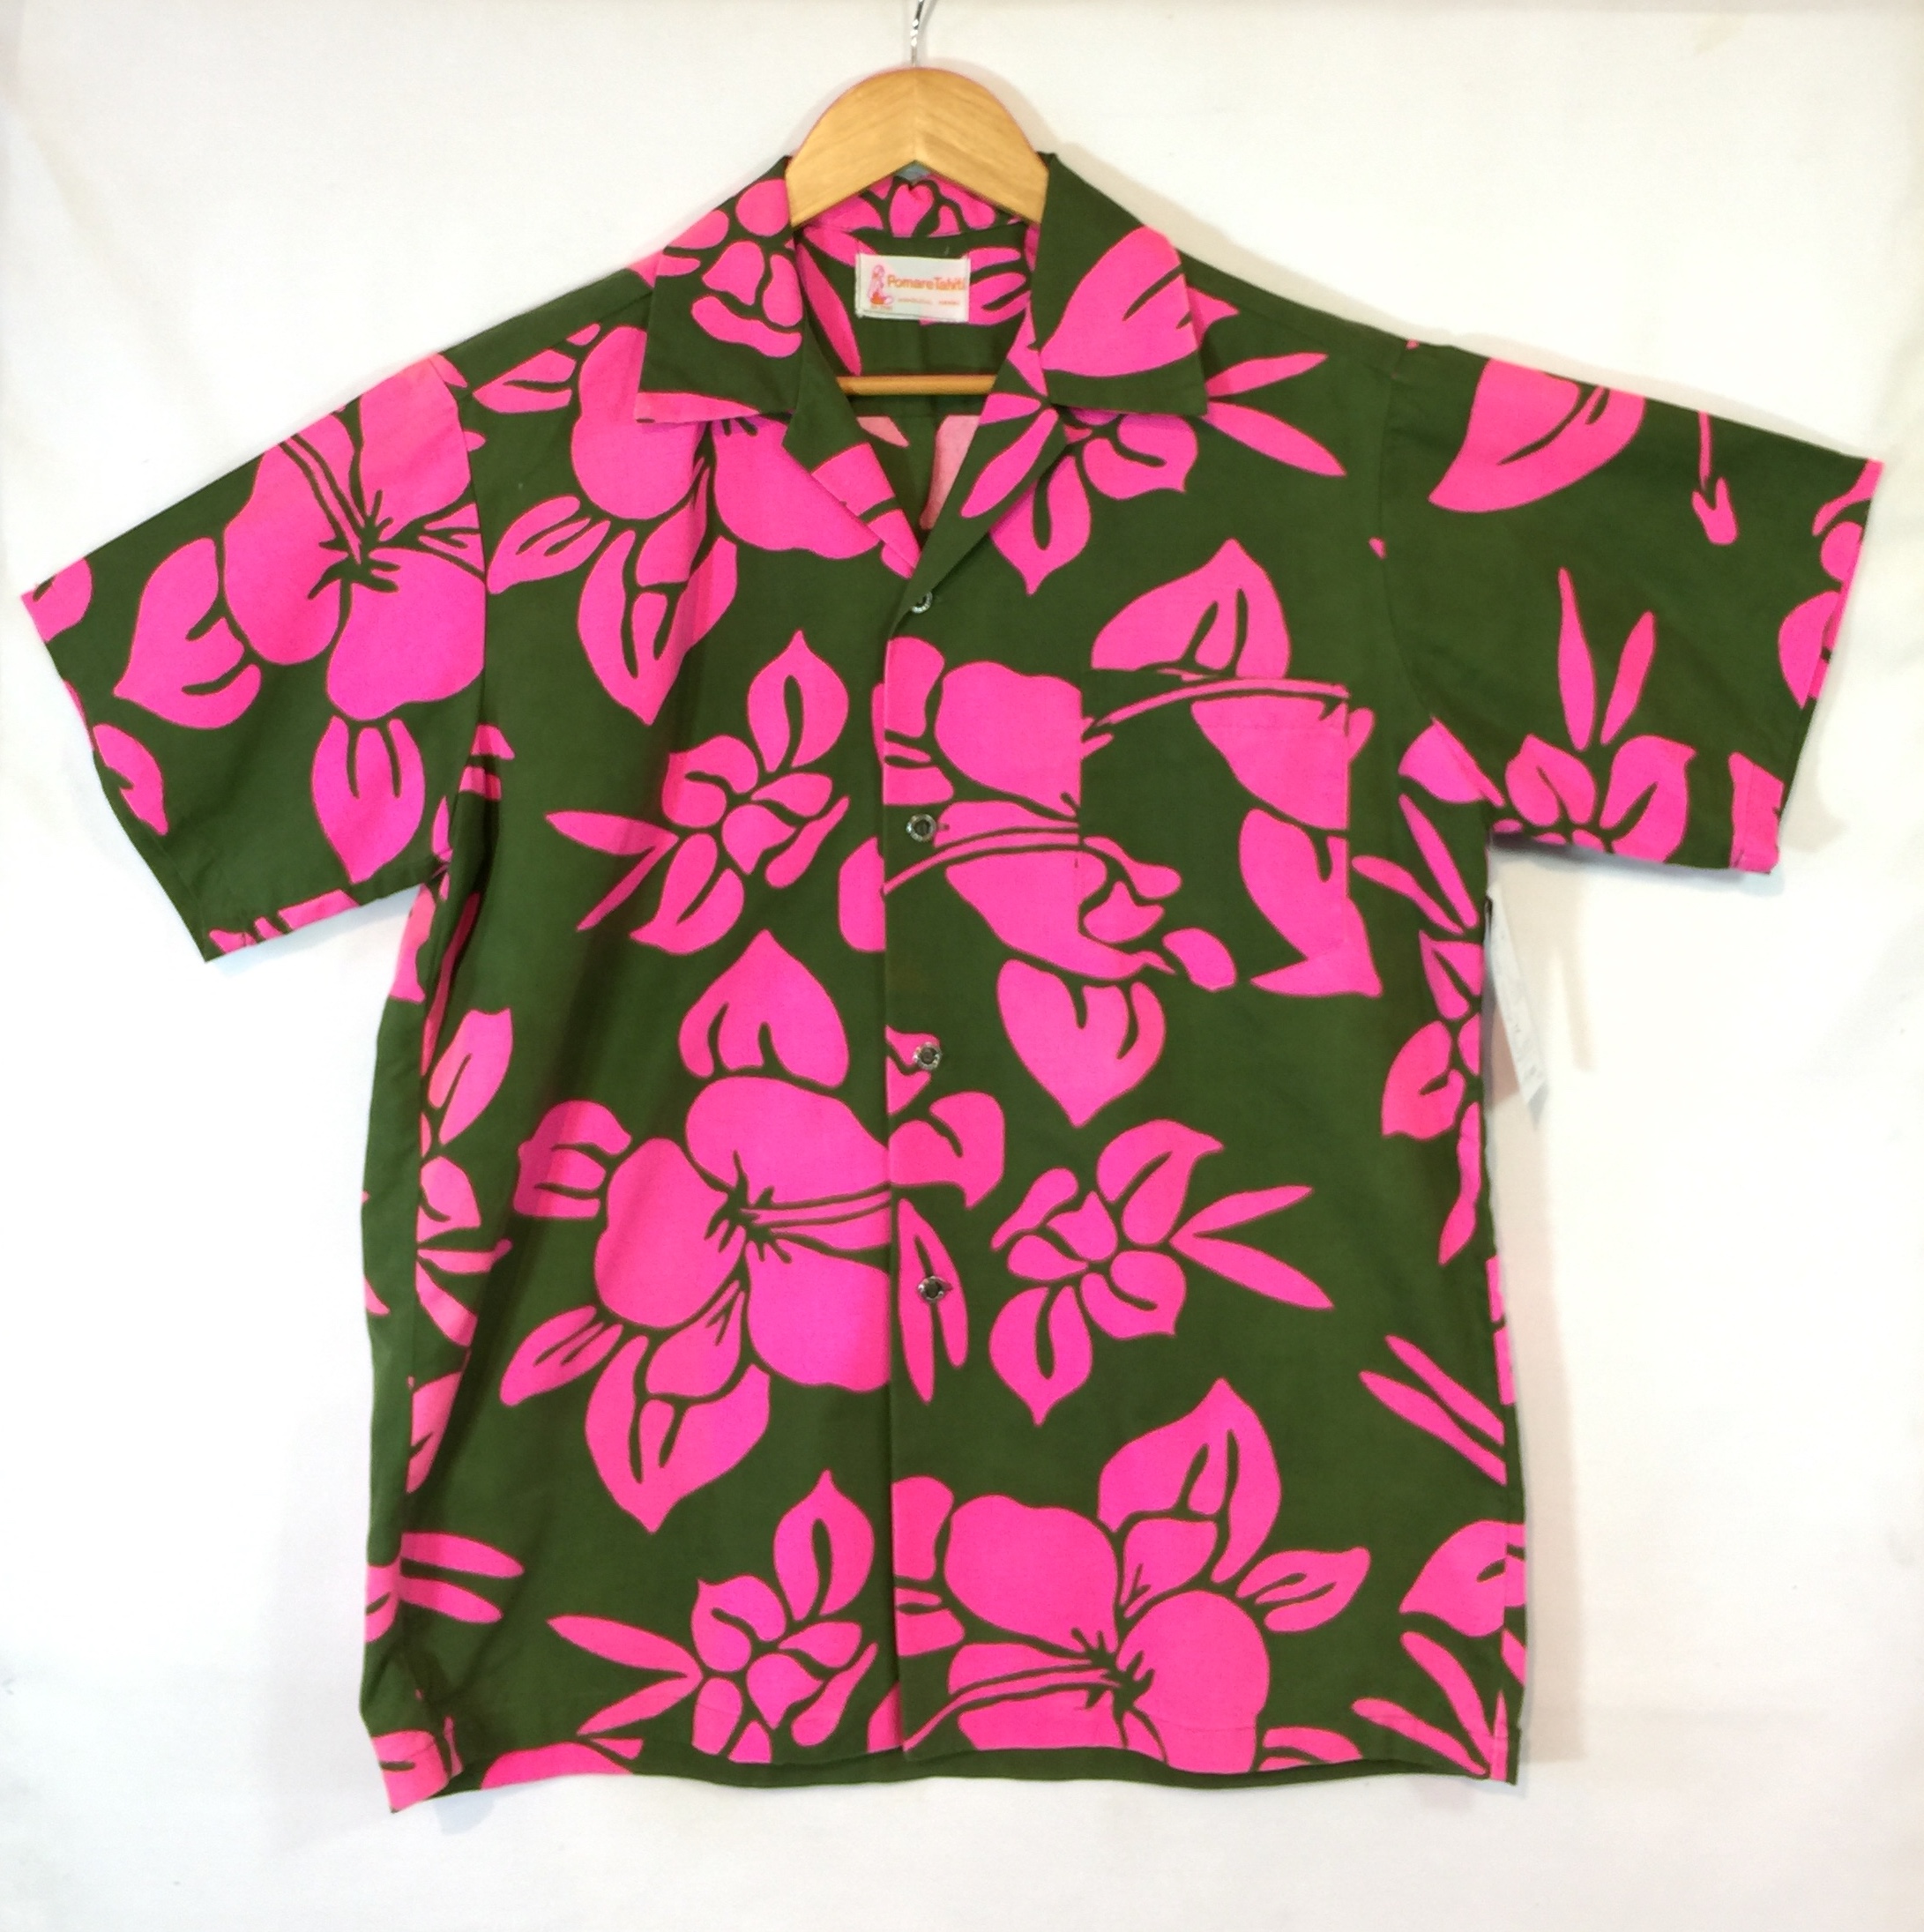 70's vintage tahiti hawaii Tshirt